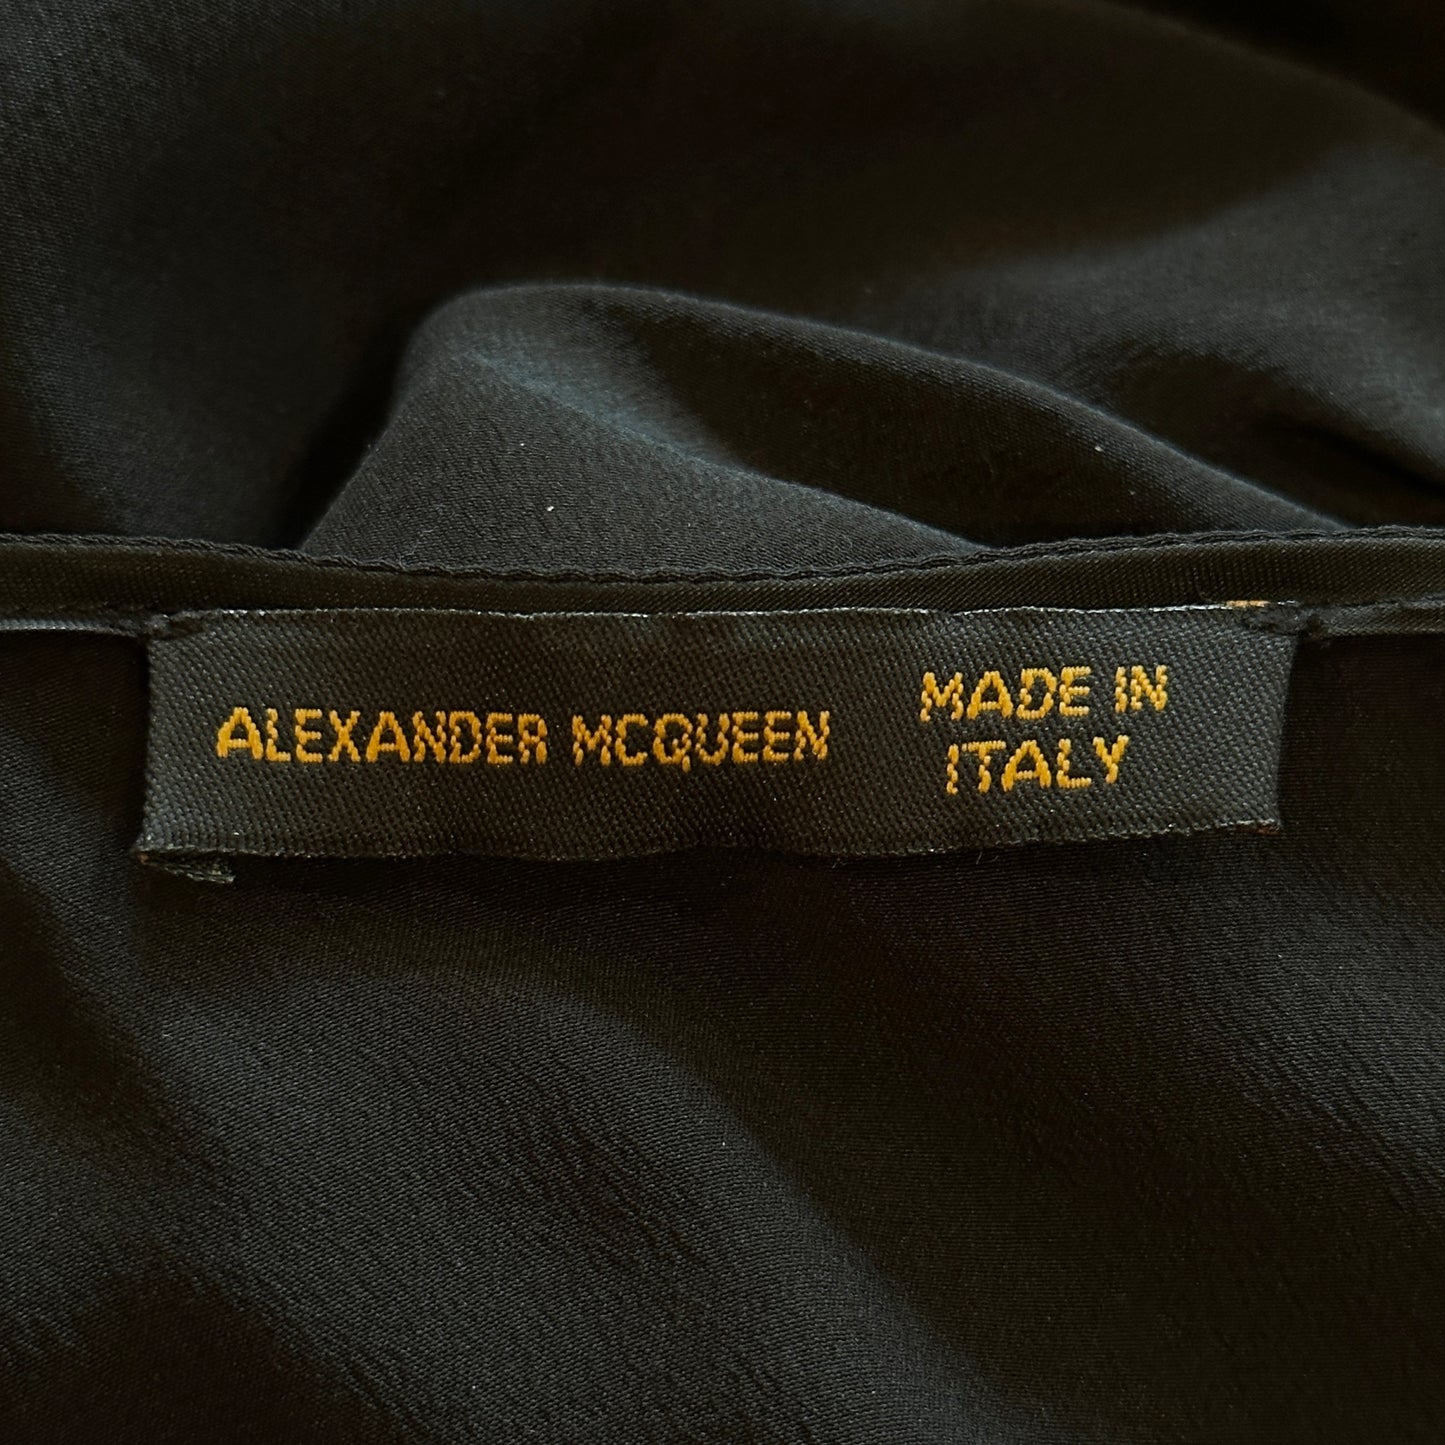 Alexander McQueen S/S 1999 Black Silk Ruffle Dress